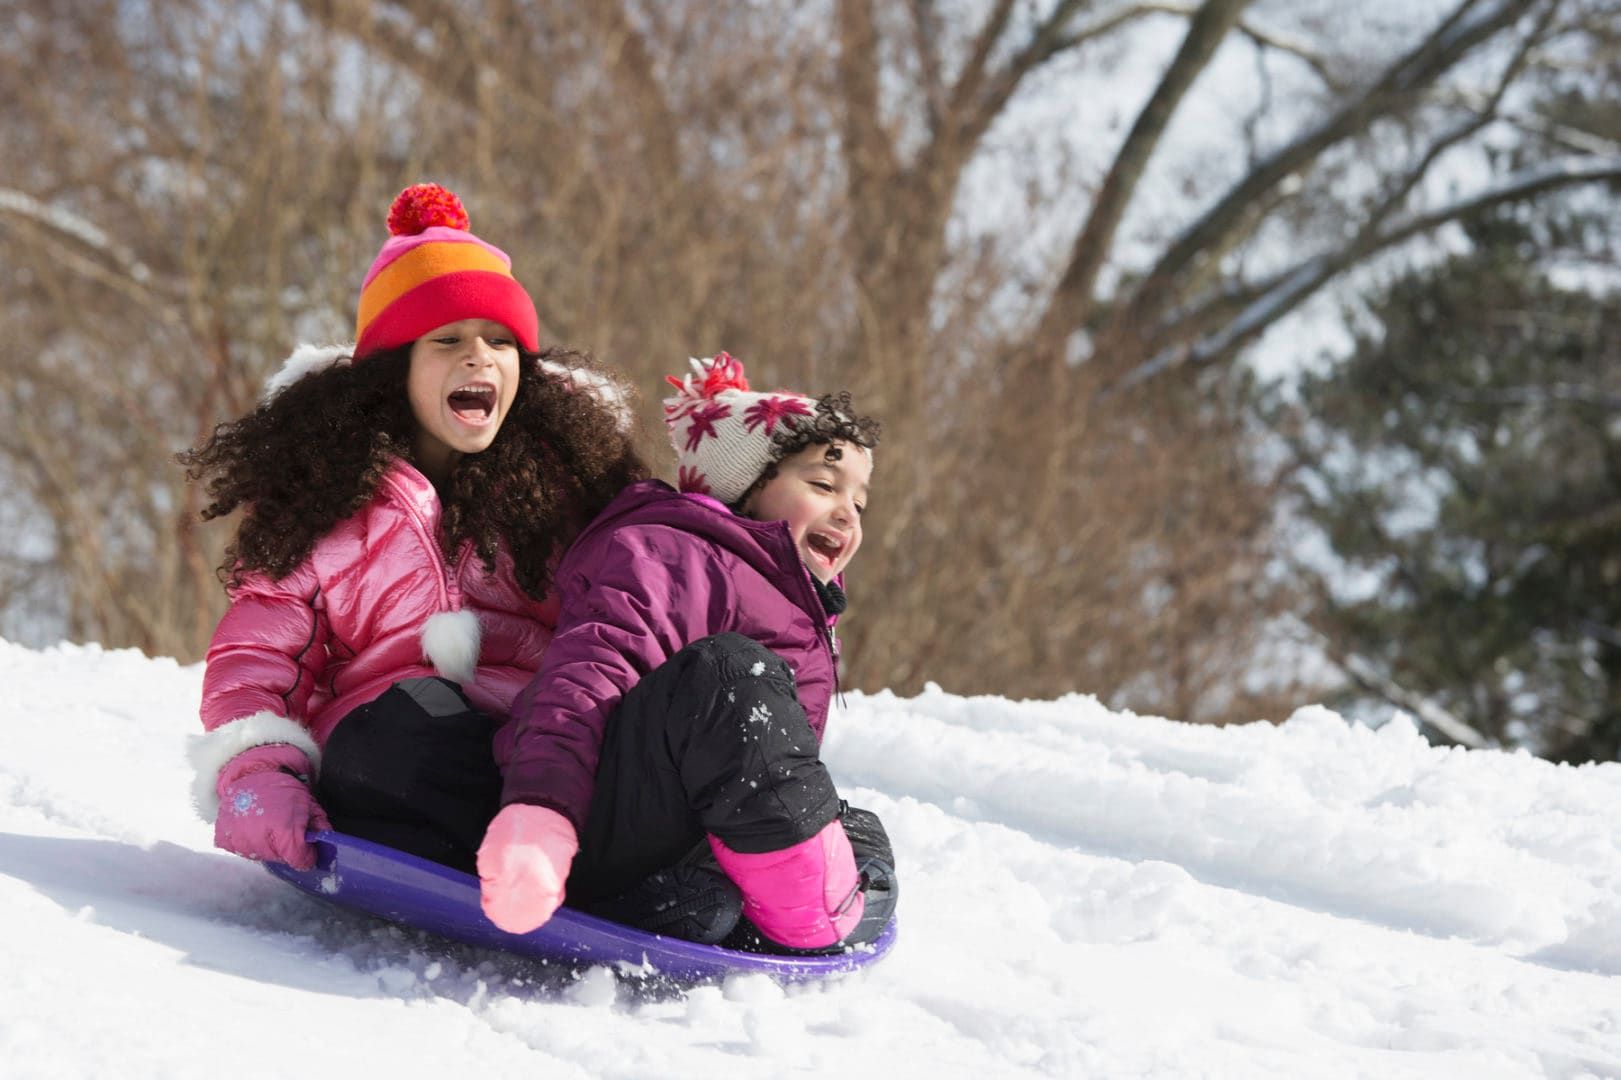 101 fun winter activities for kids